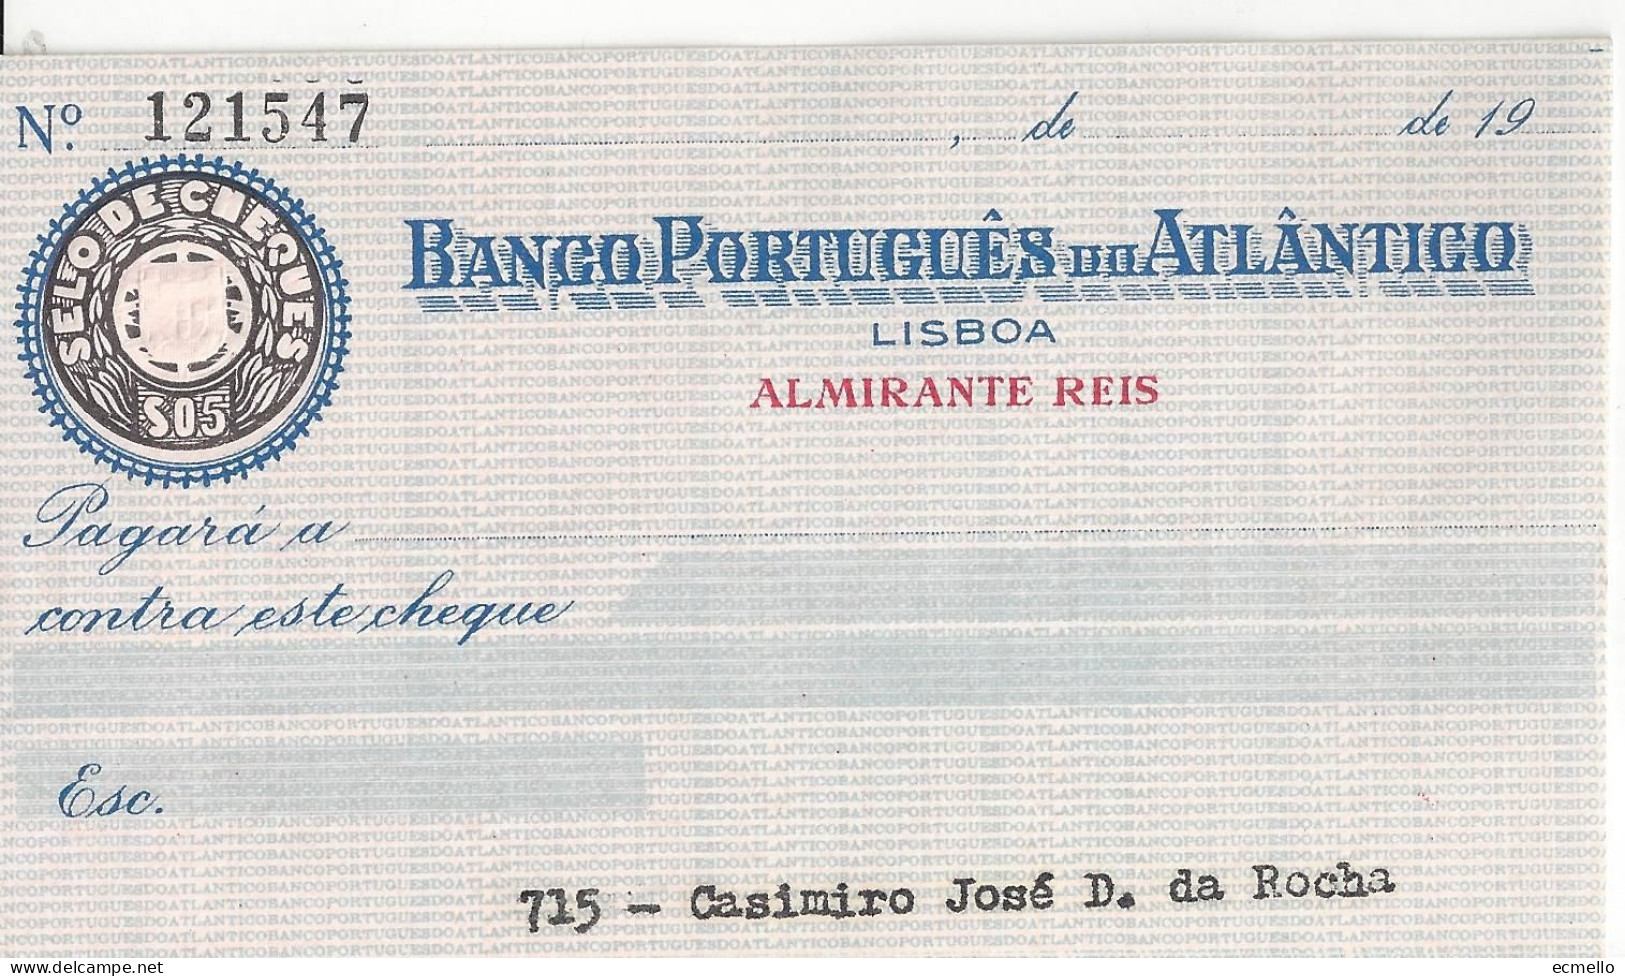 PORTUGAL CHEQUE CHECK BANCO PORTUGUÊS DO ATLÂNTICO, 1950'S, AZUL - Cheques & Traveler's Cheques